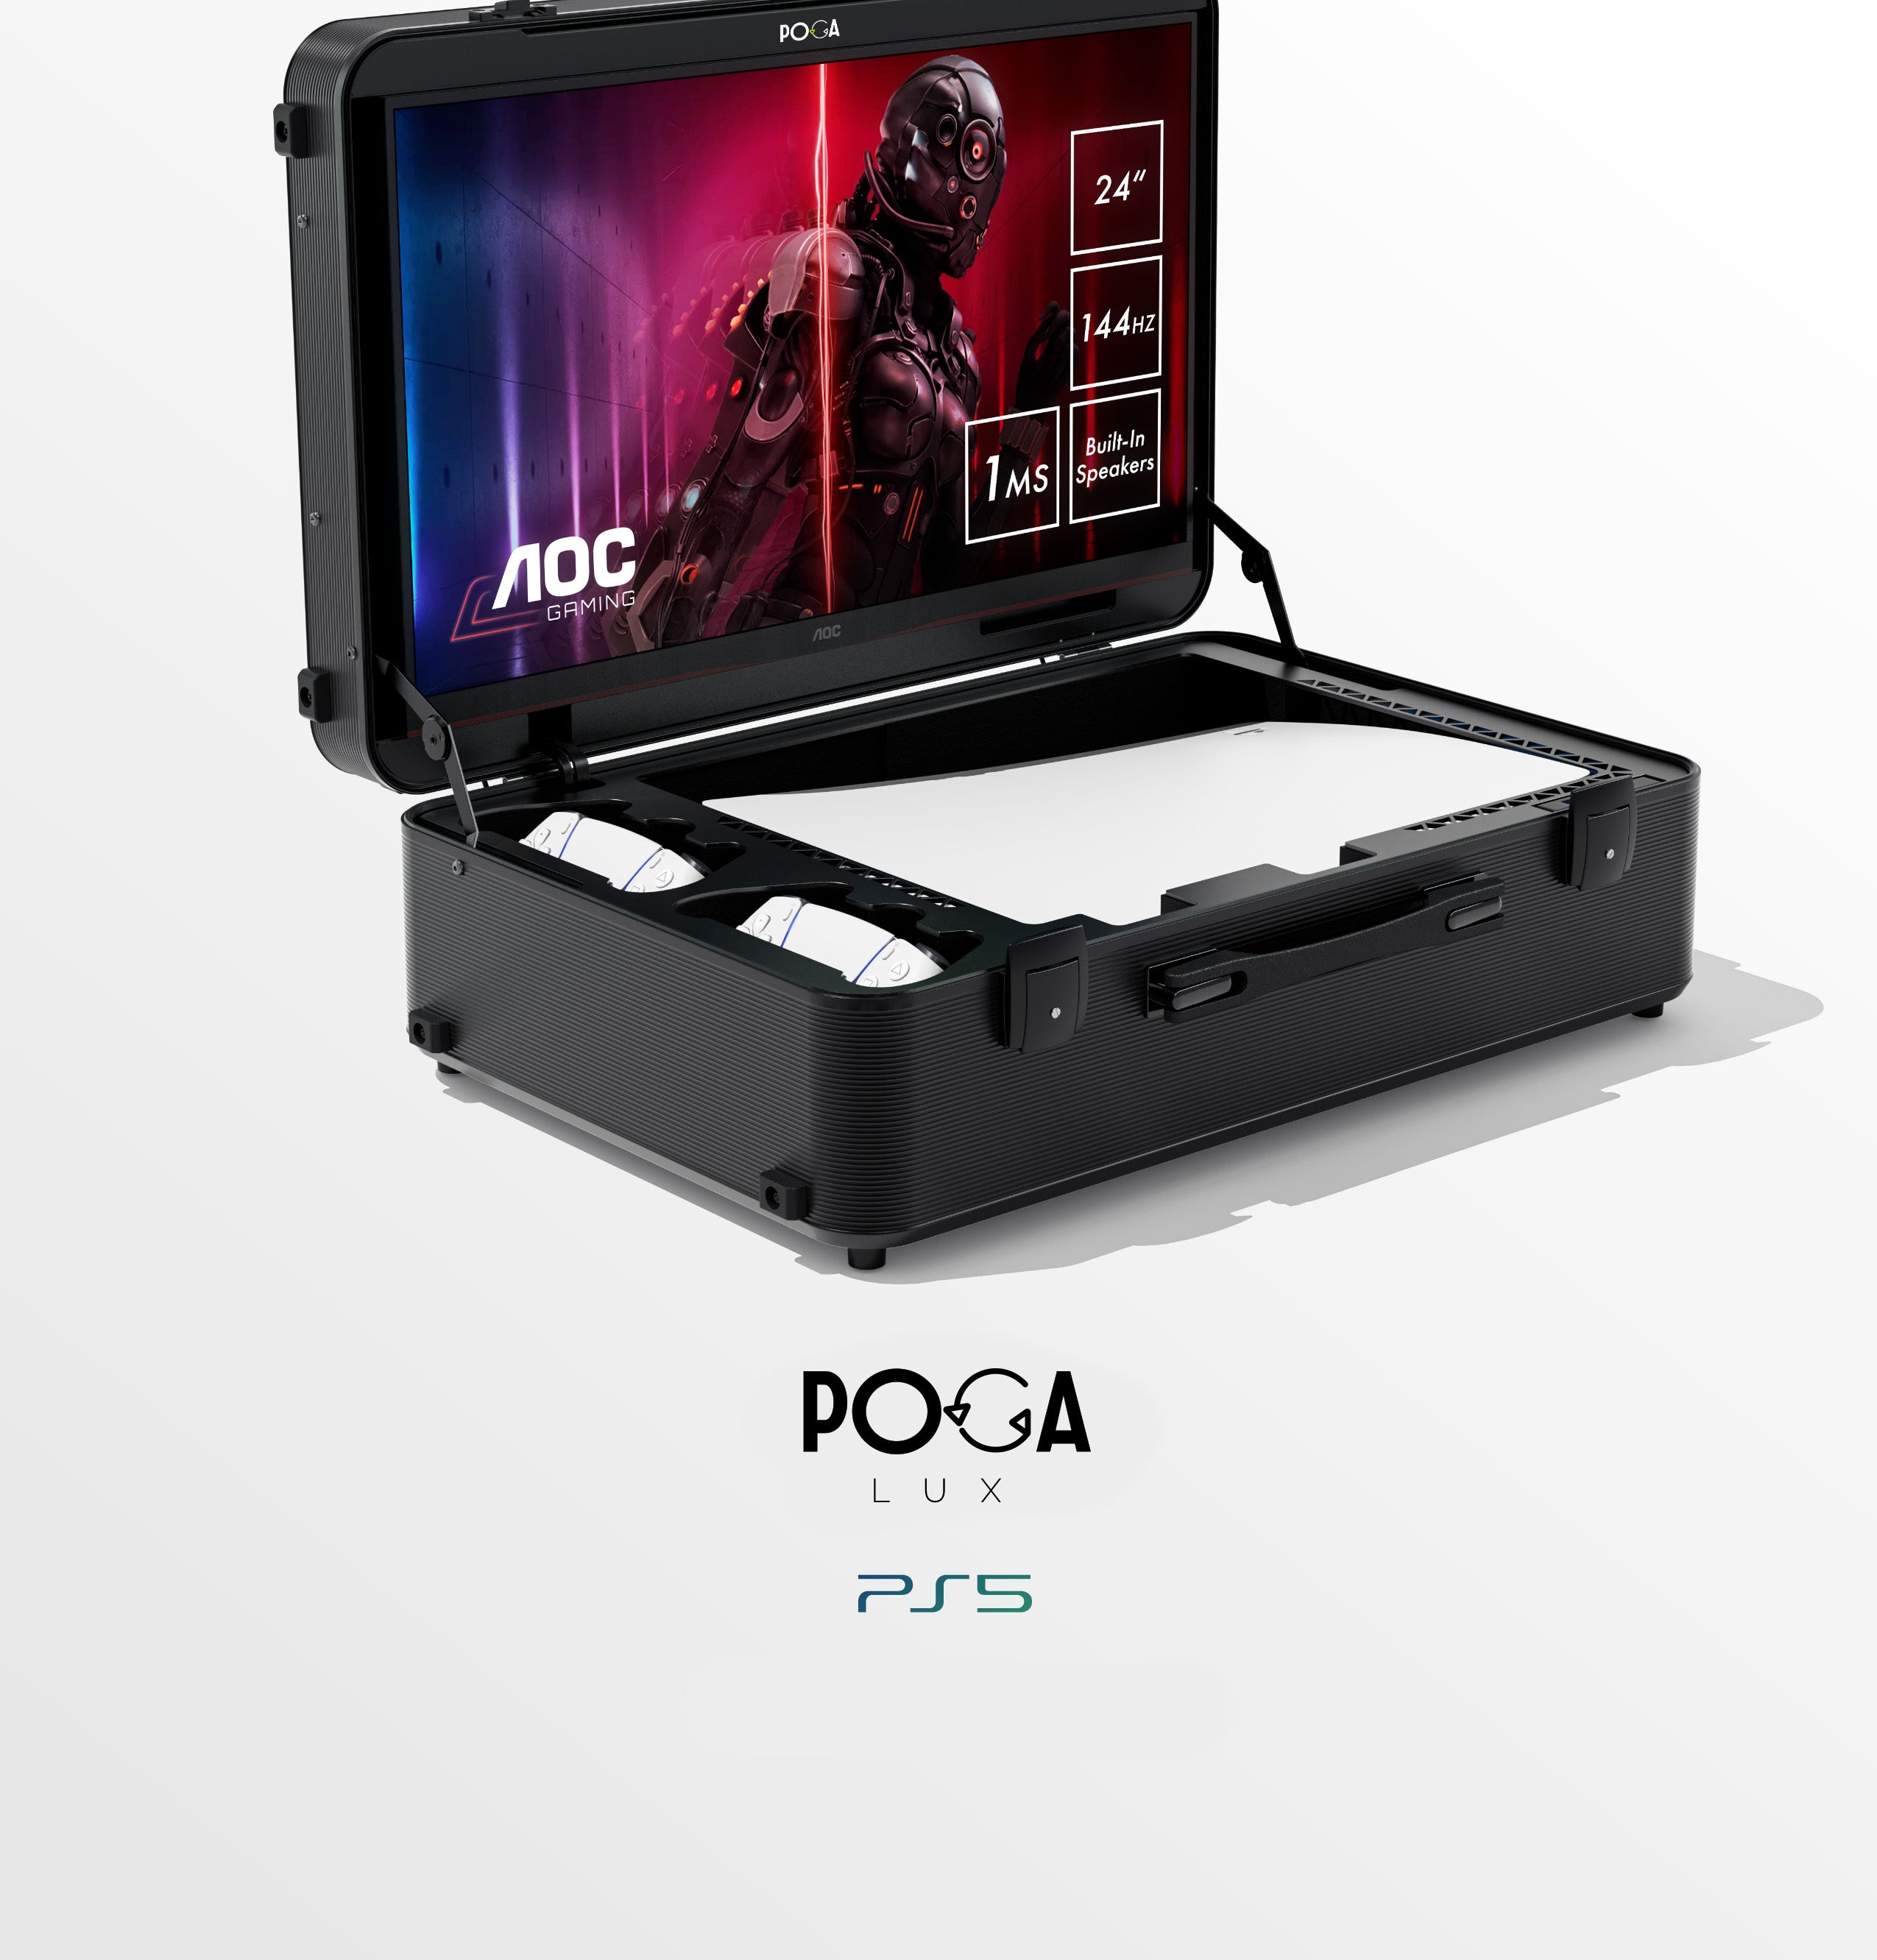 Malette PS5 POGA Lux - Valise de transport pour console